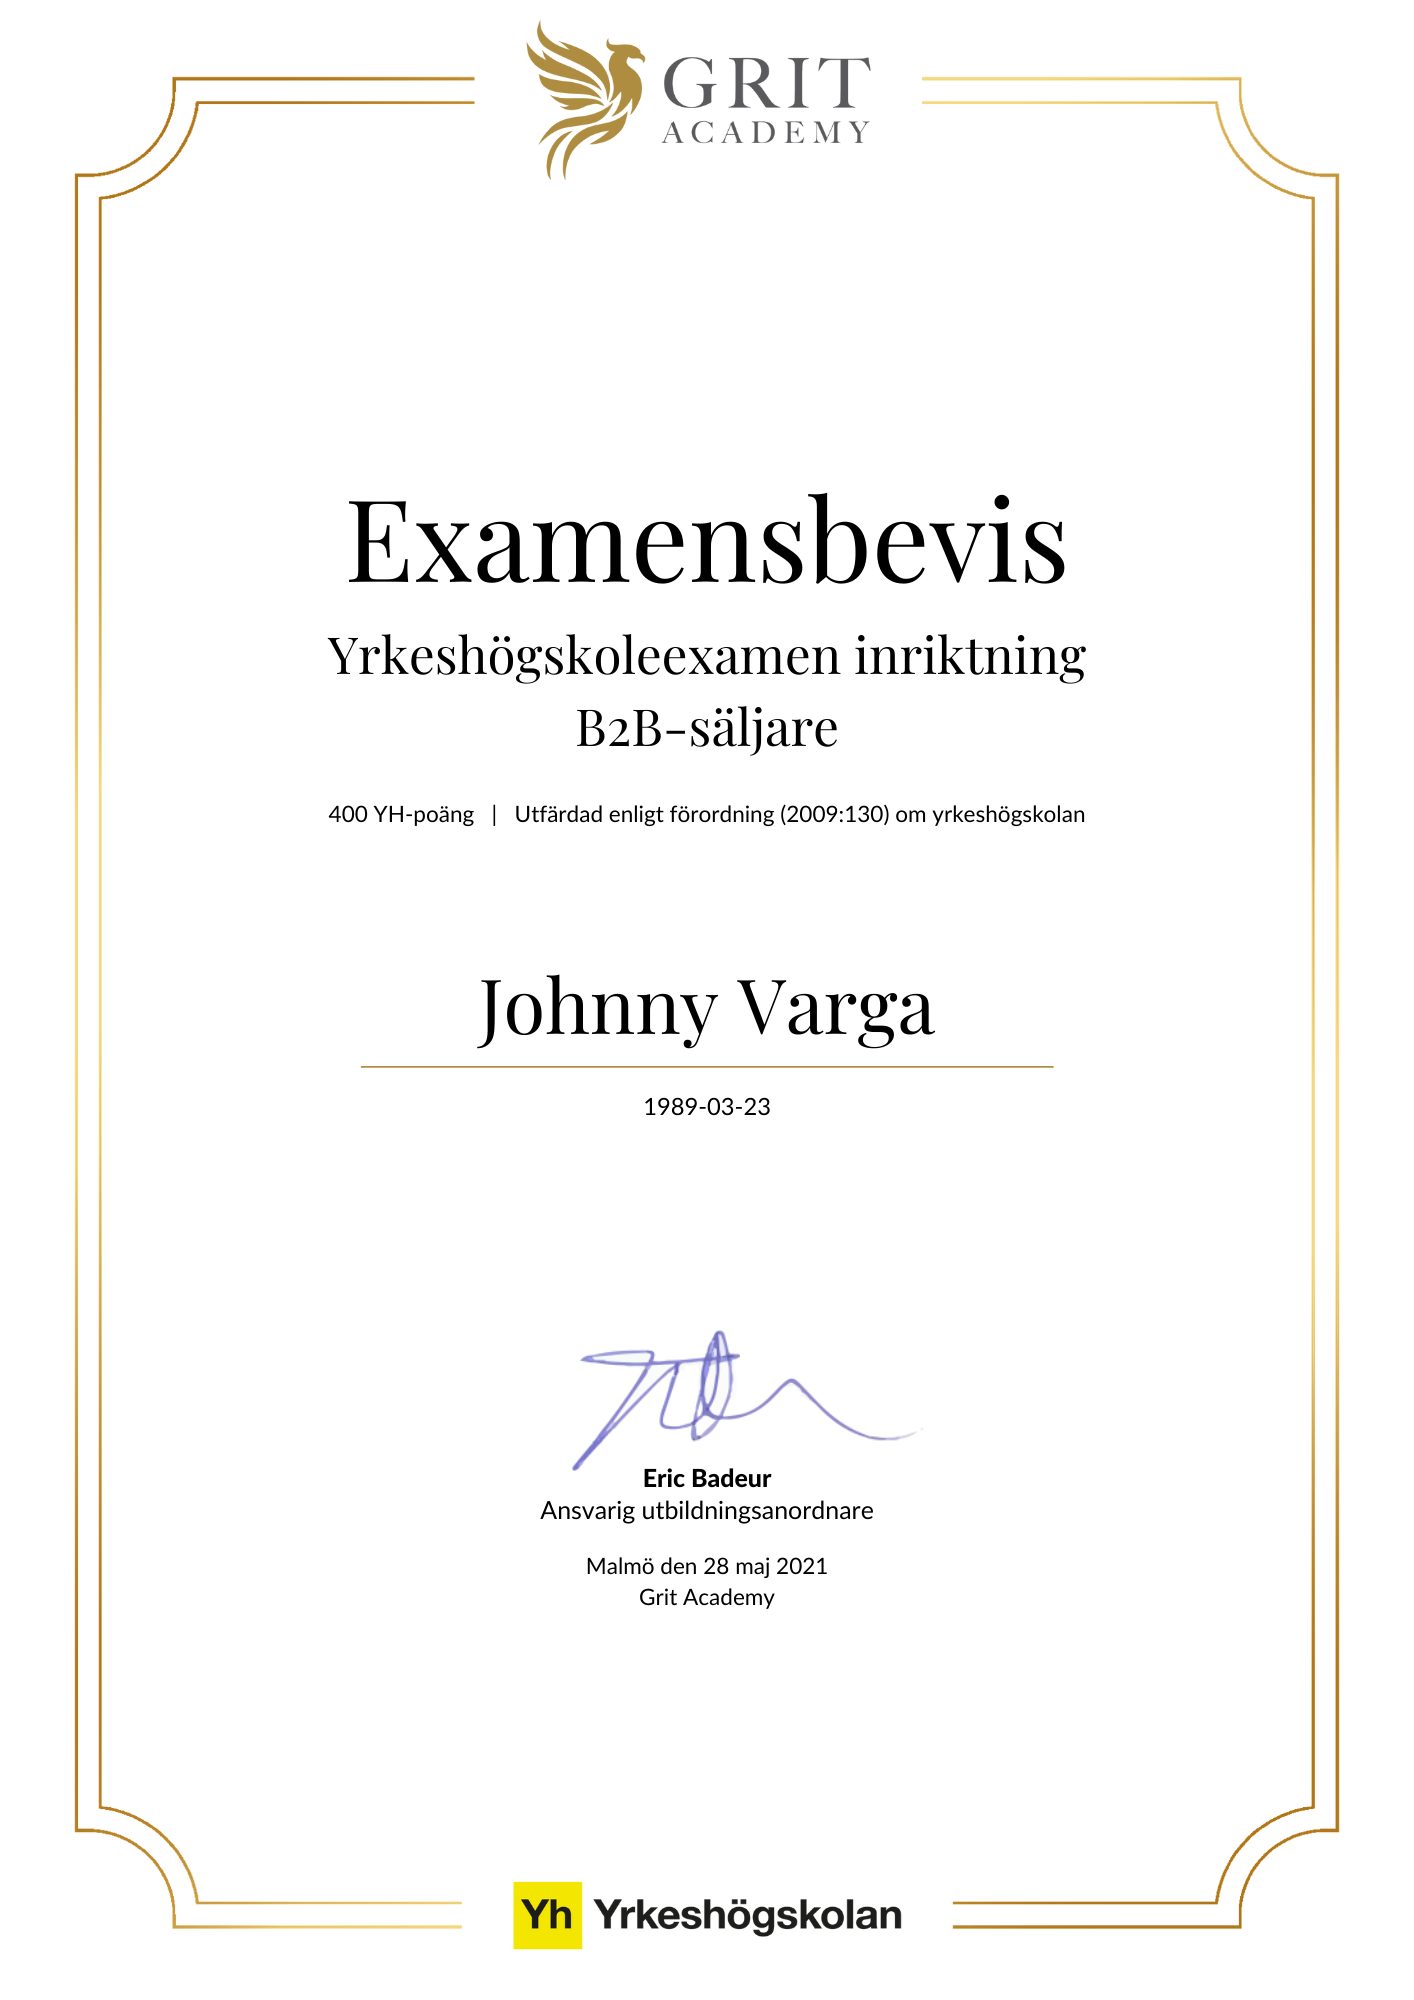 Examensbevis Johnny Varga - 1